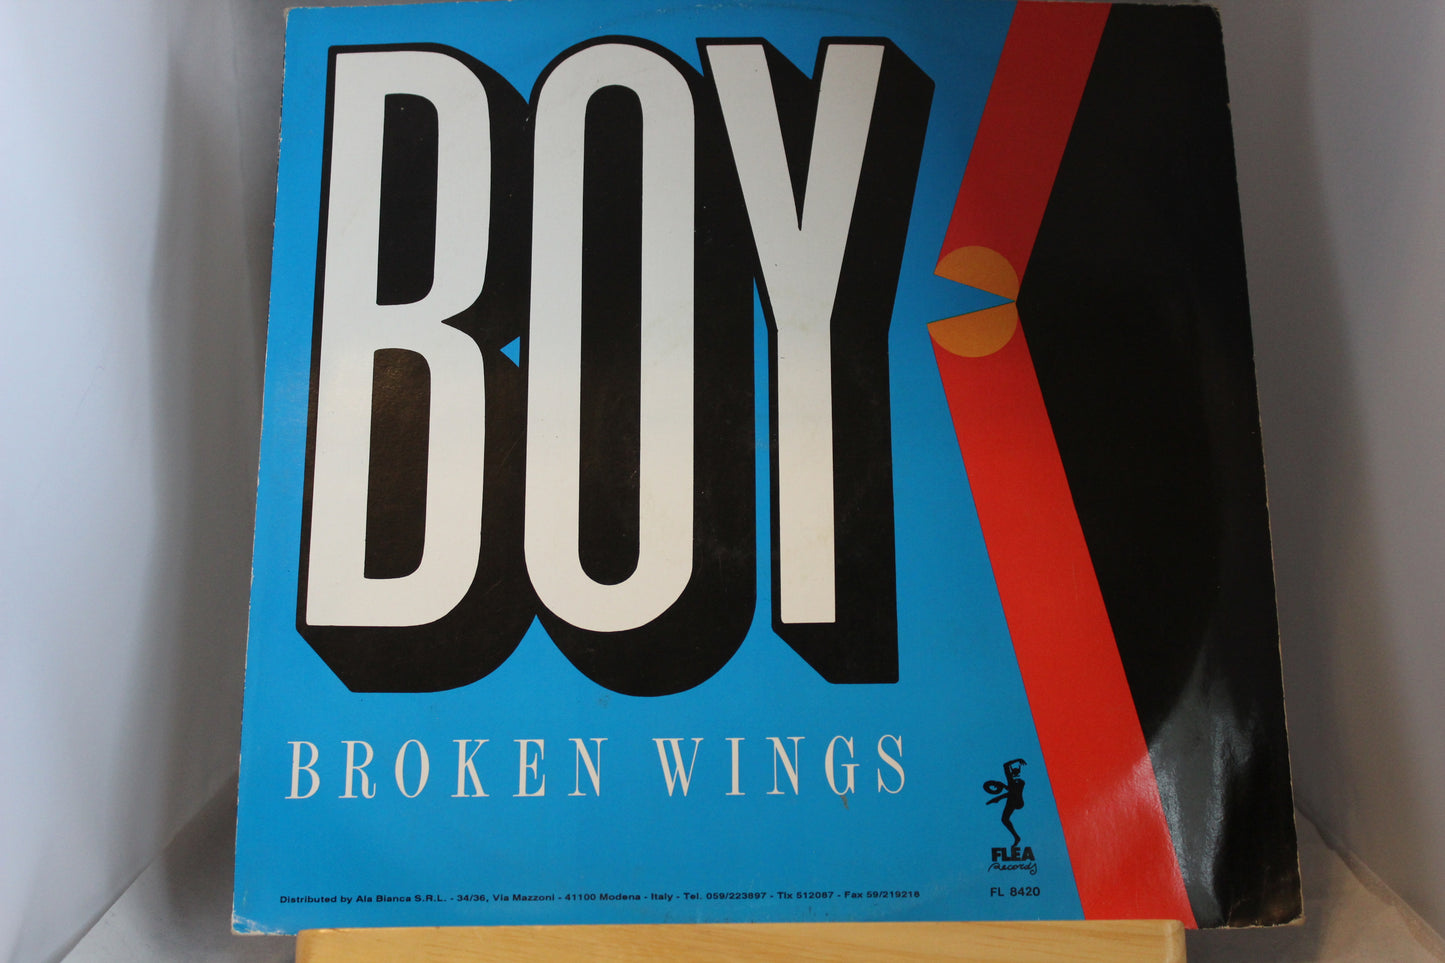 Boy Broken wings single 12